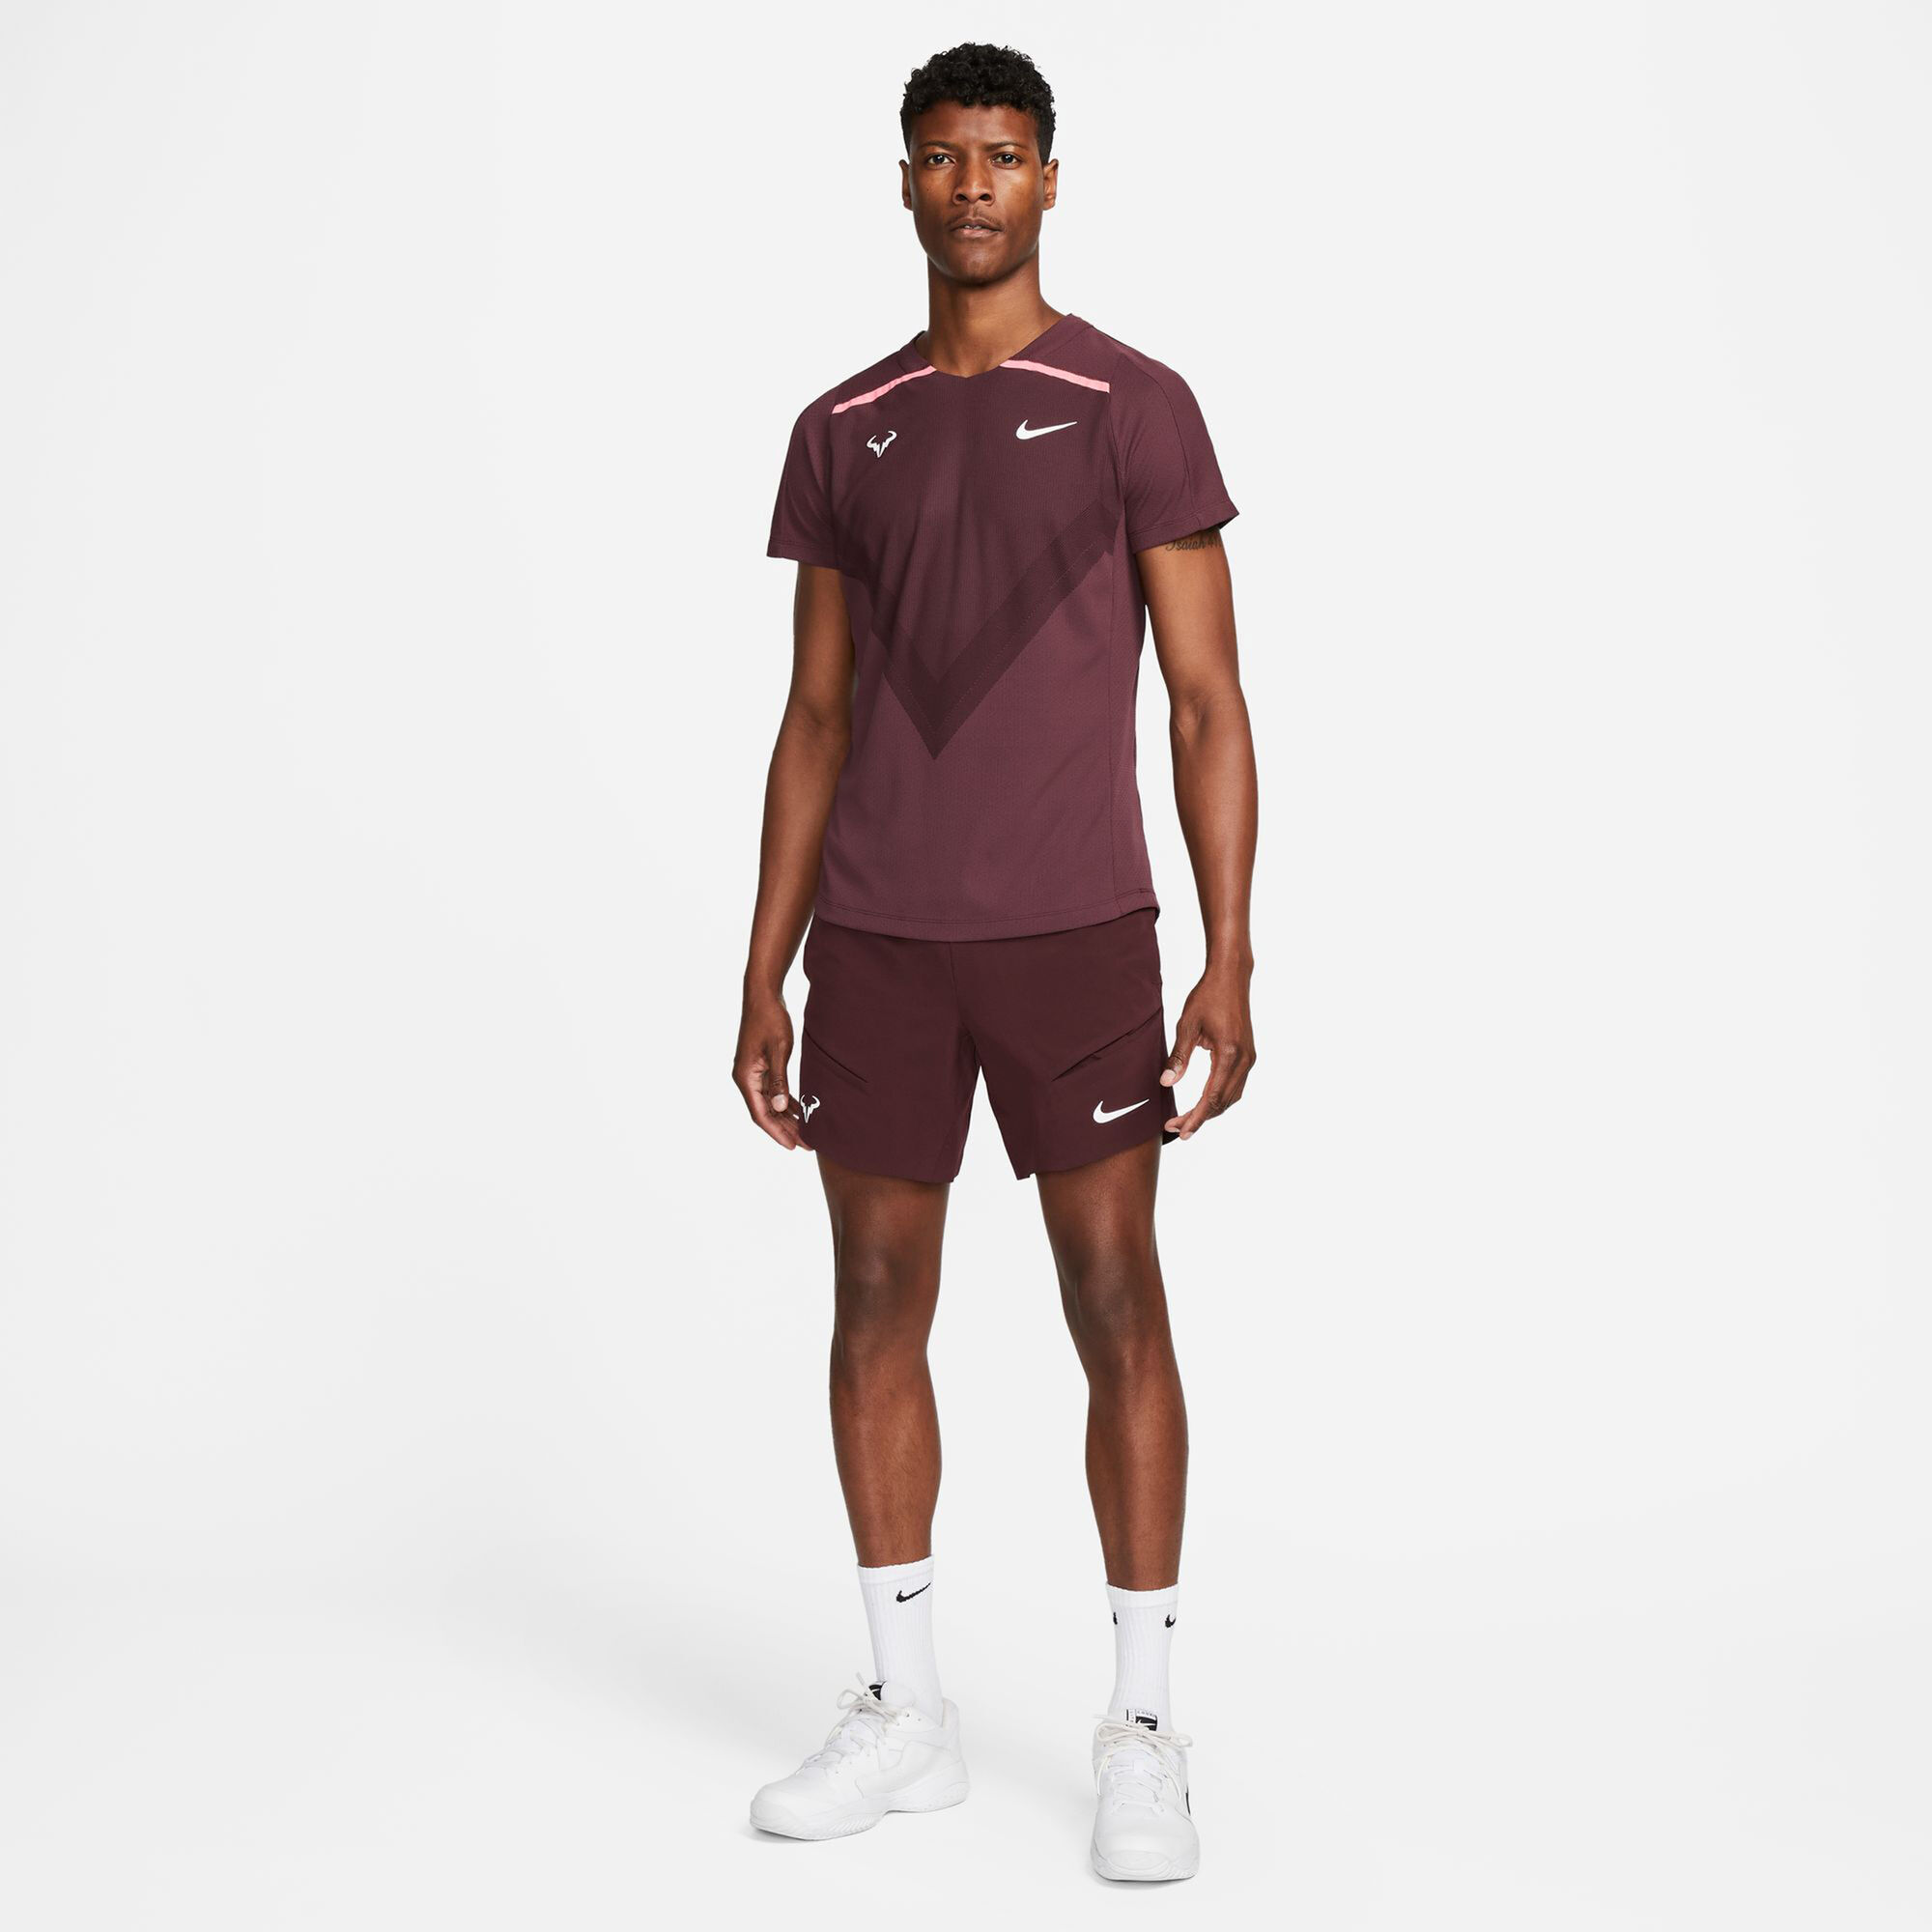 Buy Nike Dri-Fit Advantage Rafa T-Shirt Men Dark Red online | Tennis ...